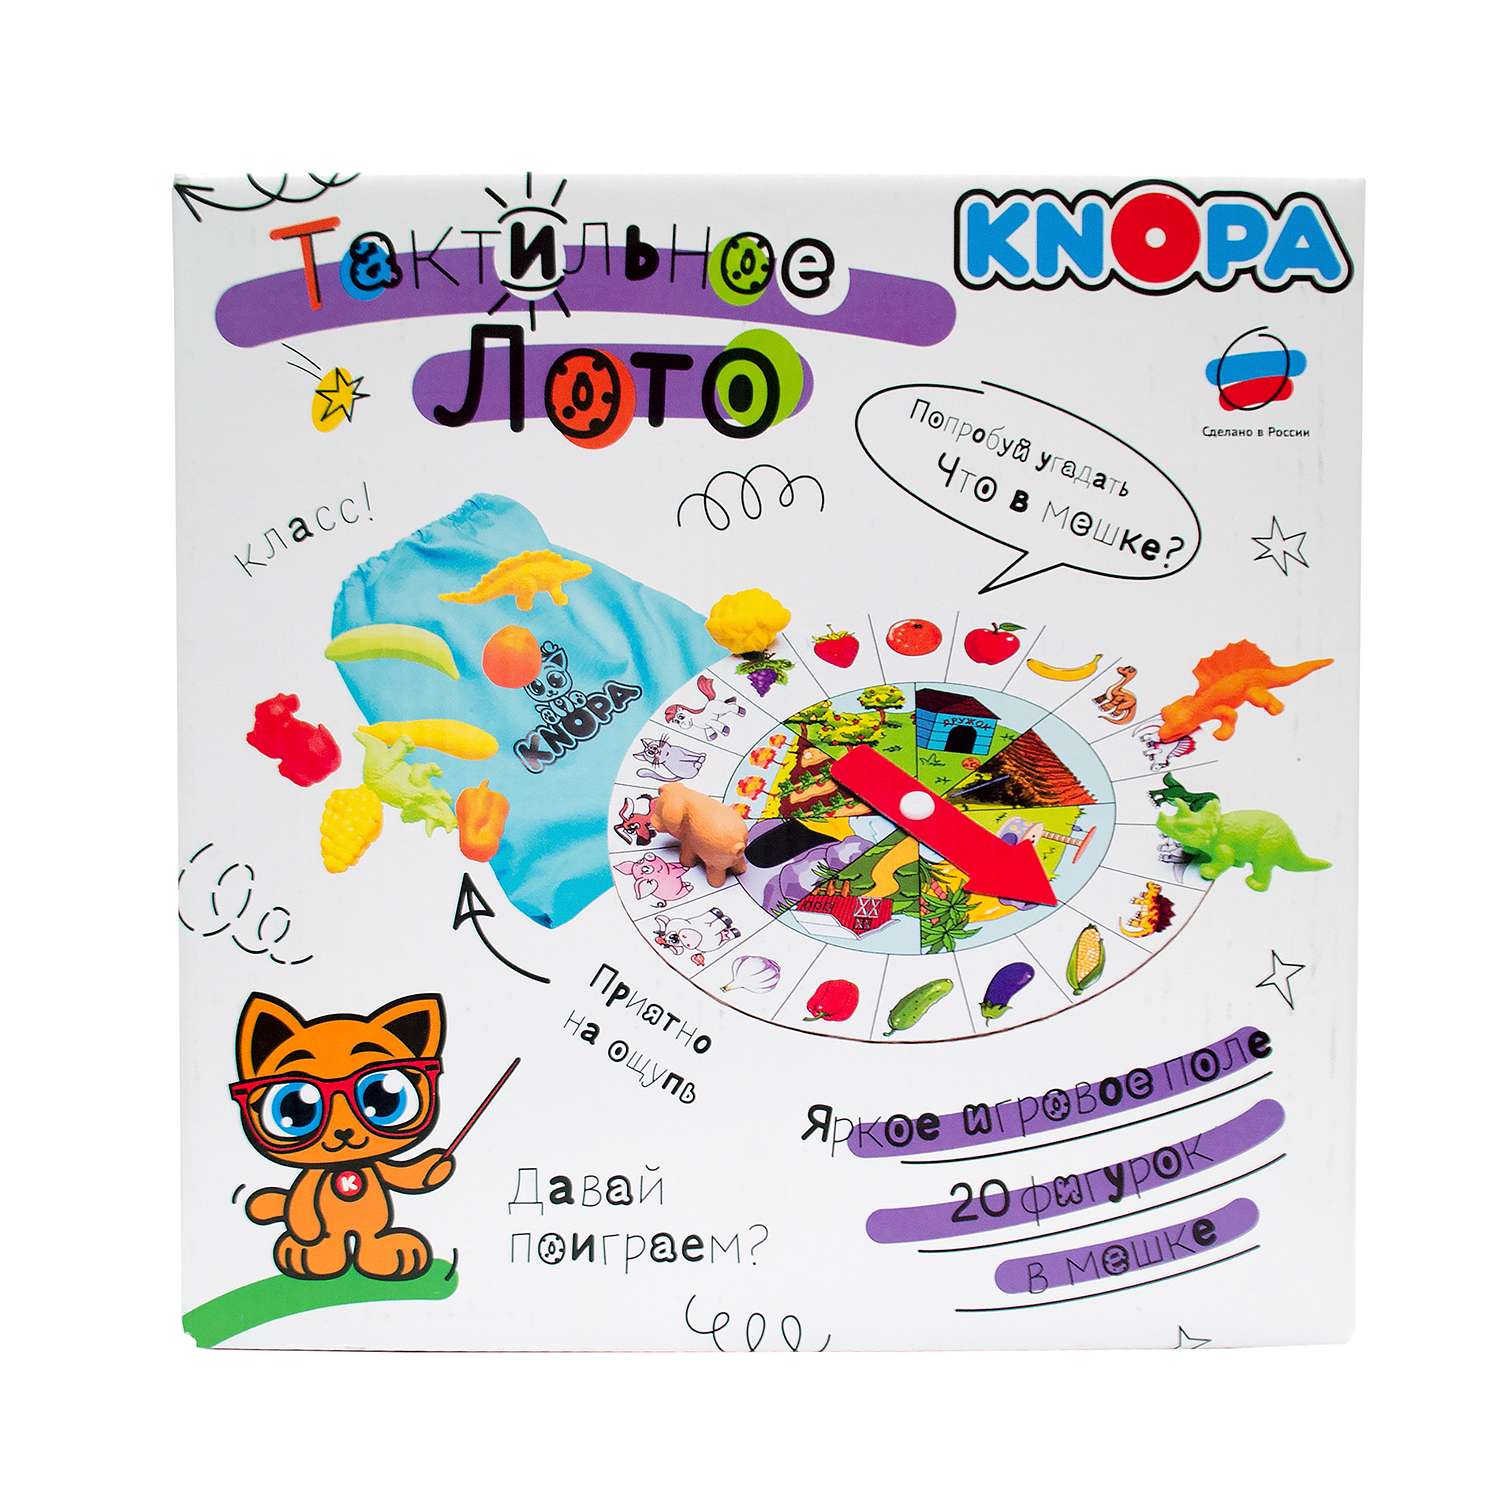 Игровой набор KNOPA Тактильное лото - фото 1